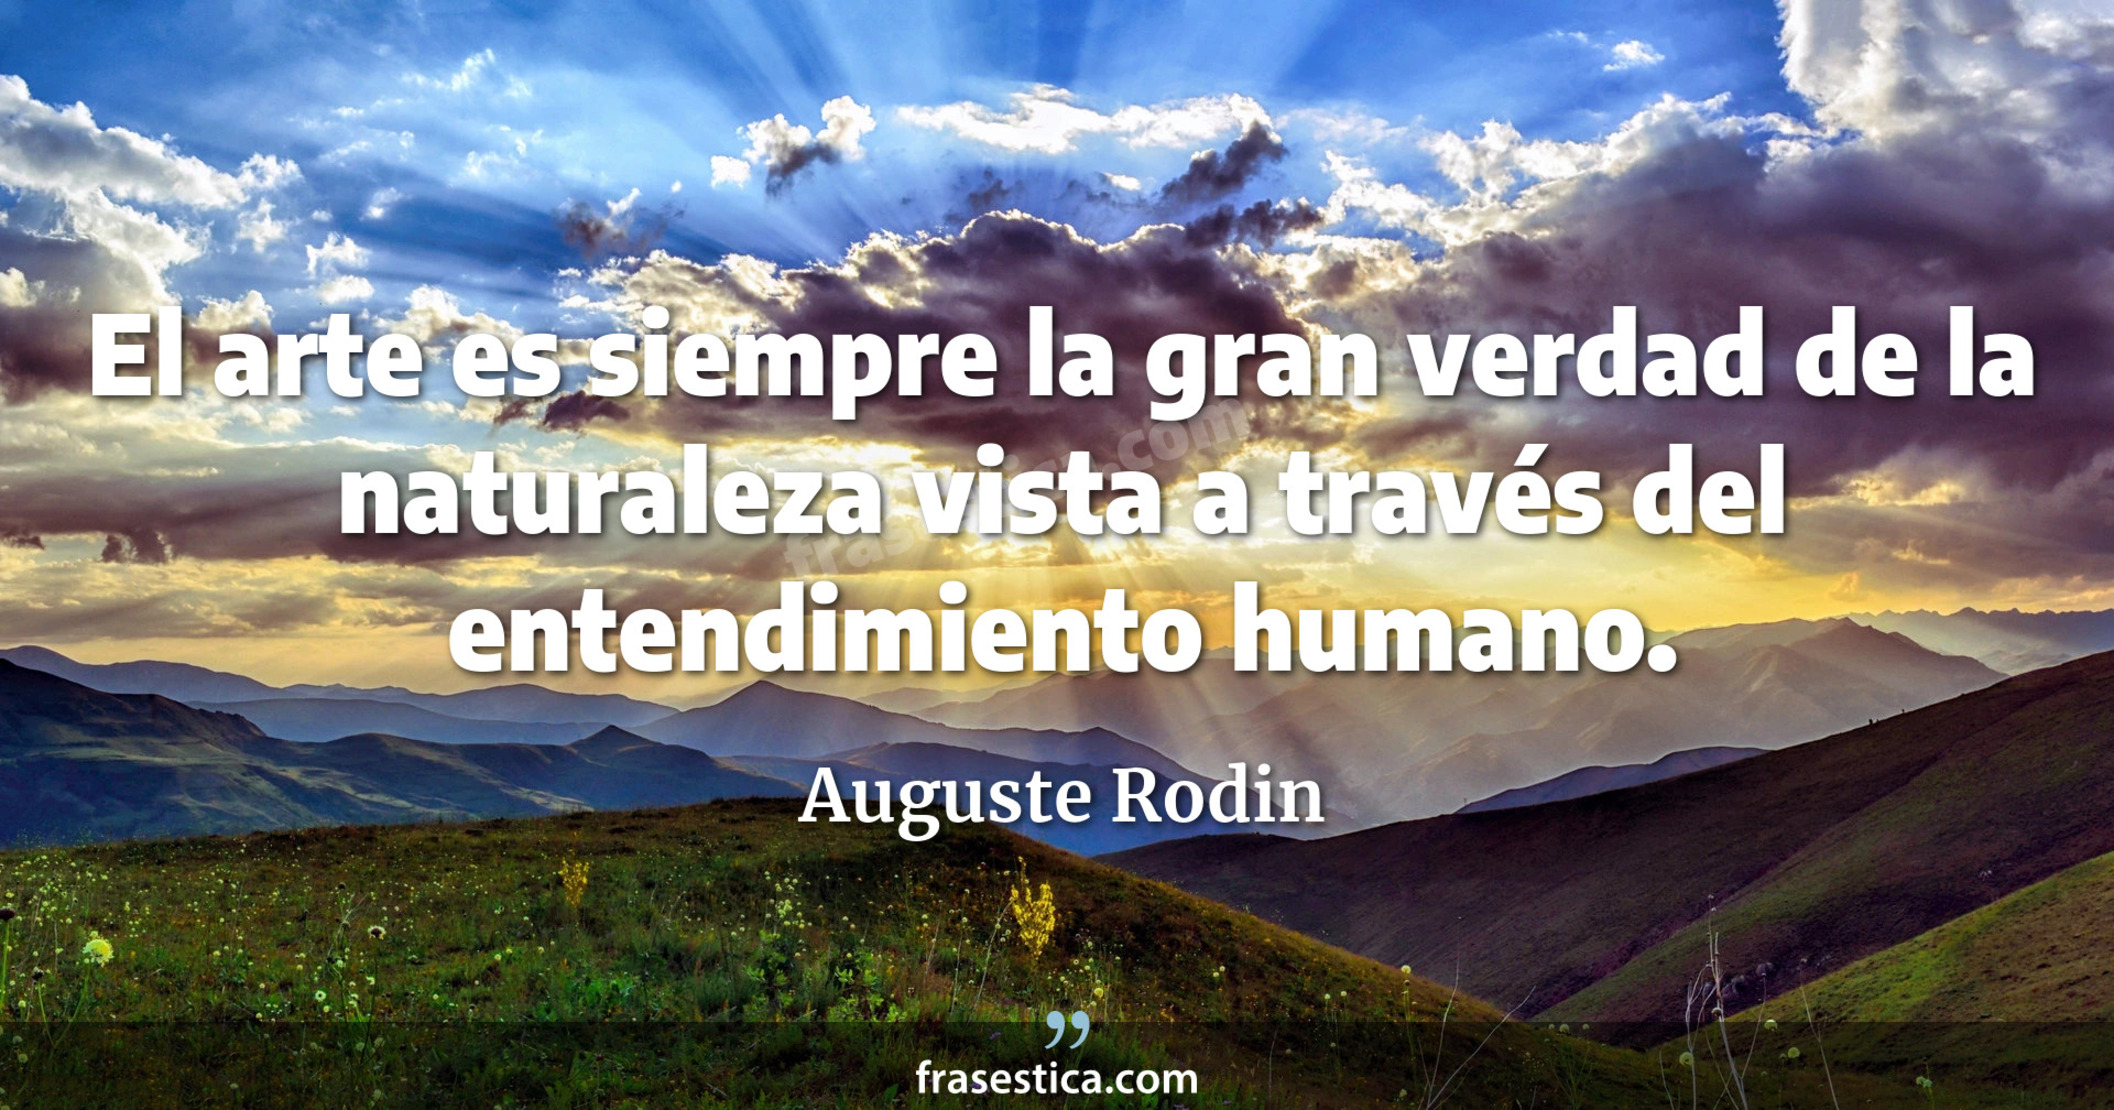 El arte es siempre la gran verdad de la naturaleza vista a través del entendimiento humano. - Auguste Rodin